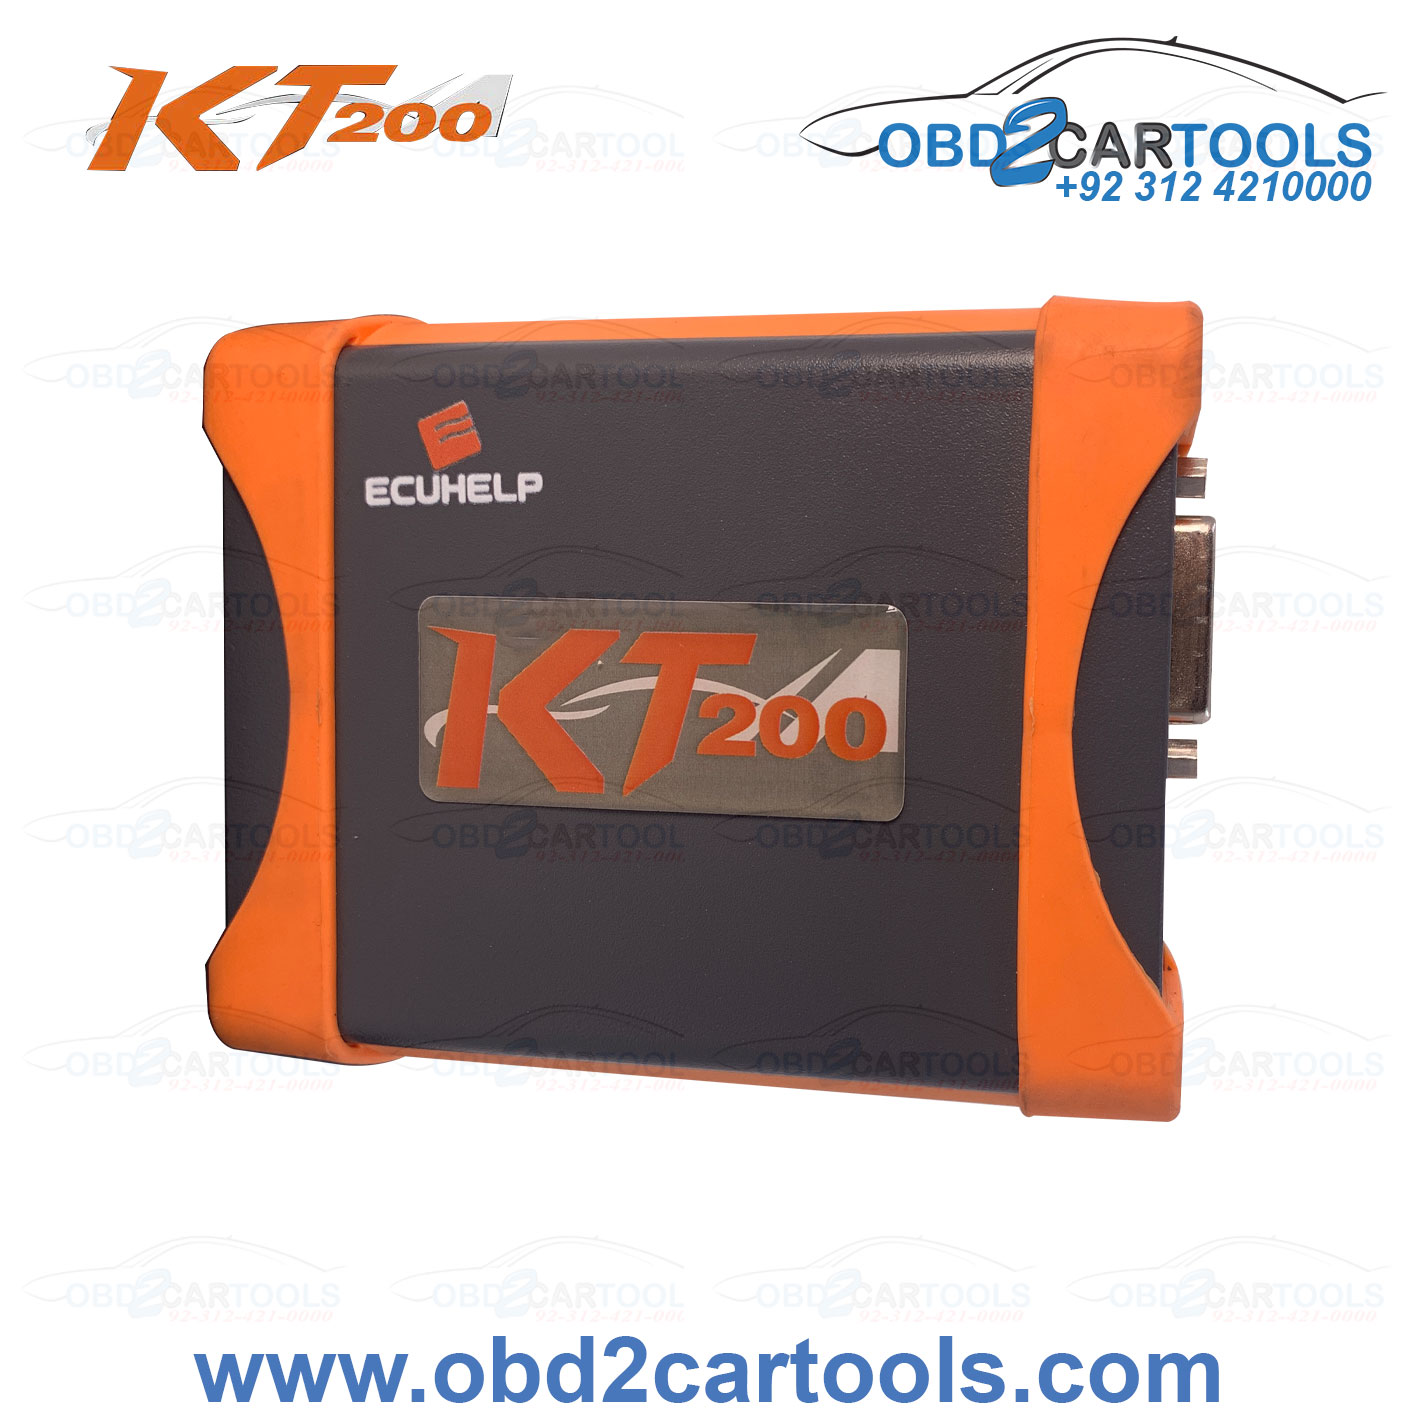 Product image for KT200 ECU Programmer Chip Tuning Tool Kit KT200 ECU/TCU Programmer Support OBD/BOOT/JTAG/BDM Multiple Protocols